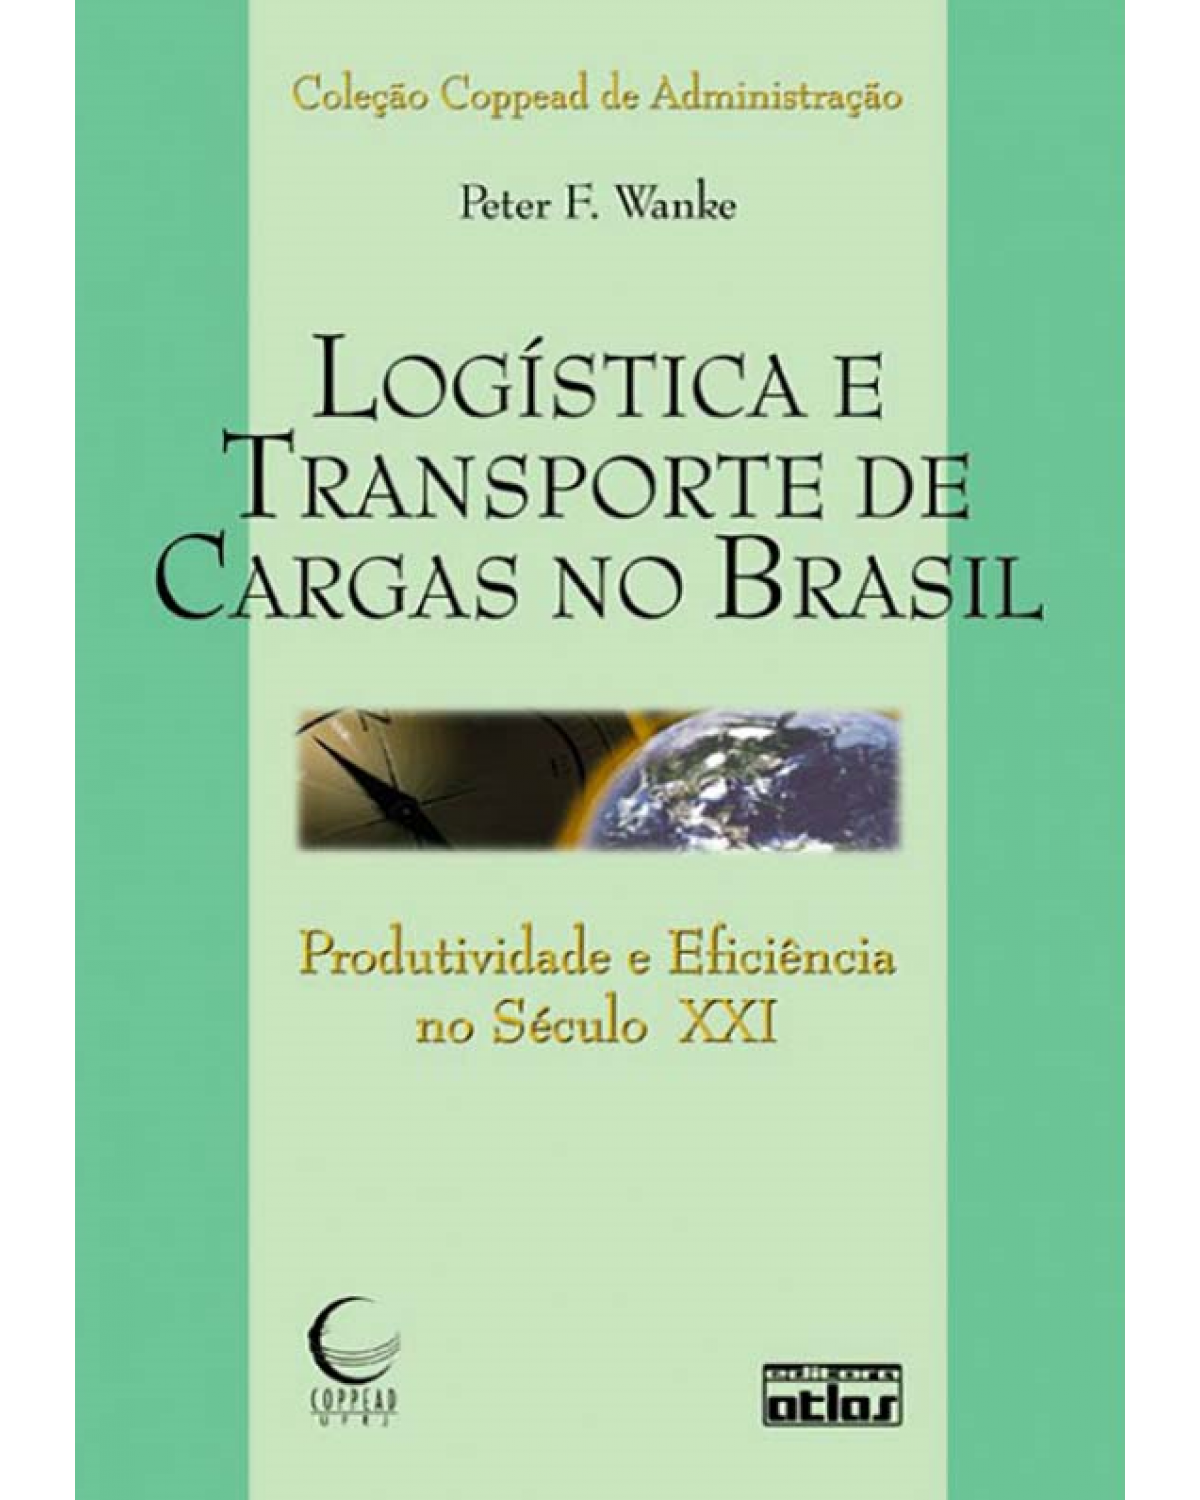 Logística e transporte de cargas no Brasil - Produtividade e eficiência no século XXI - 1ª Edição | 2010